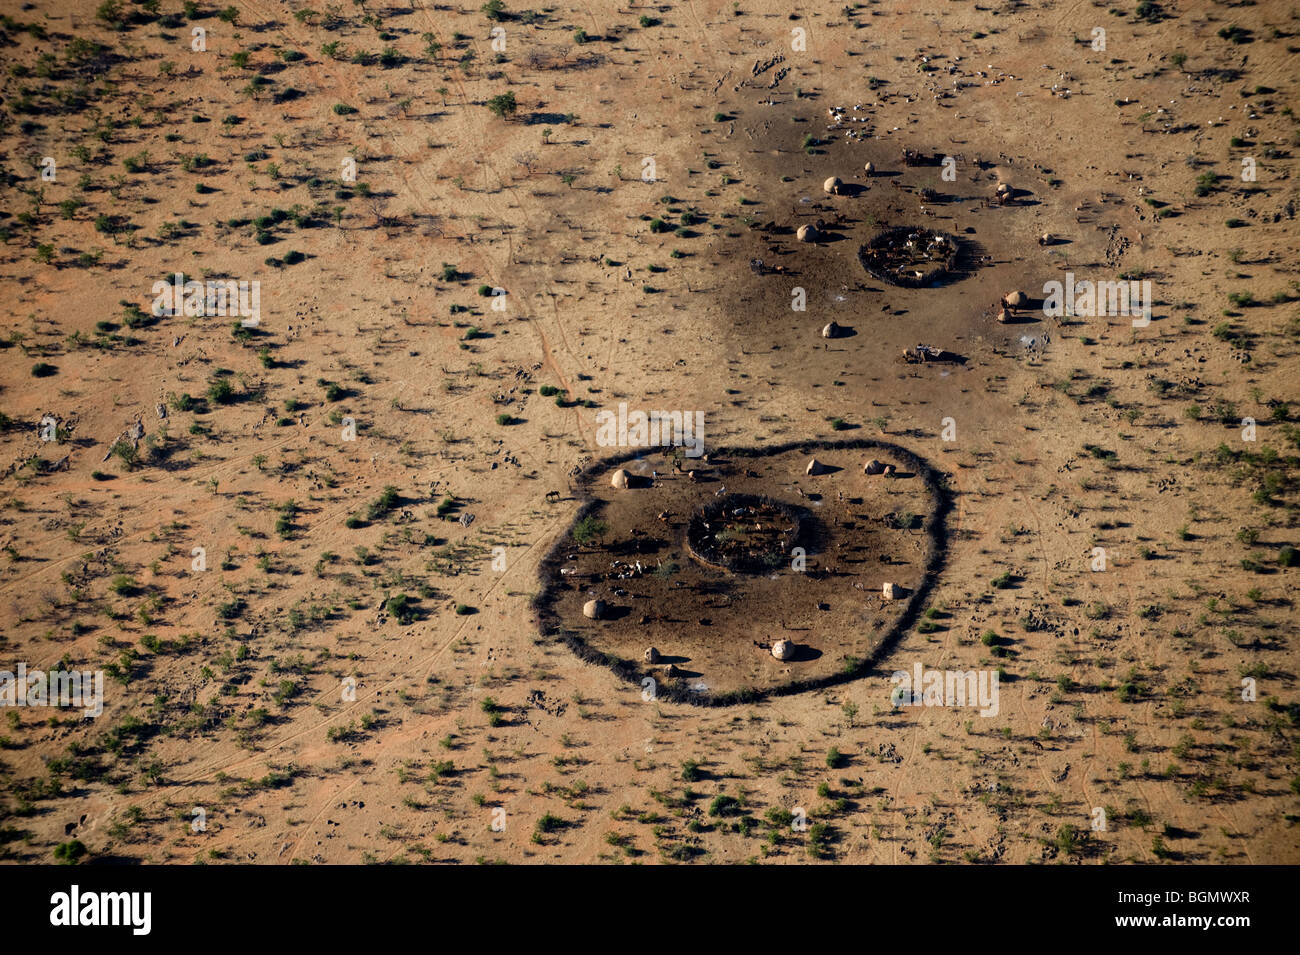 Vues aériennes de villes Himba, Kaokoland, la Namibie. Banque D'Images